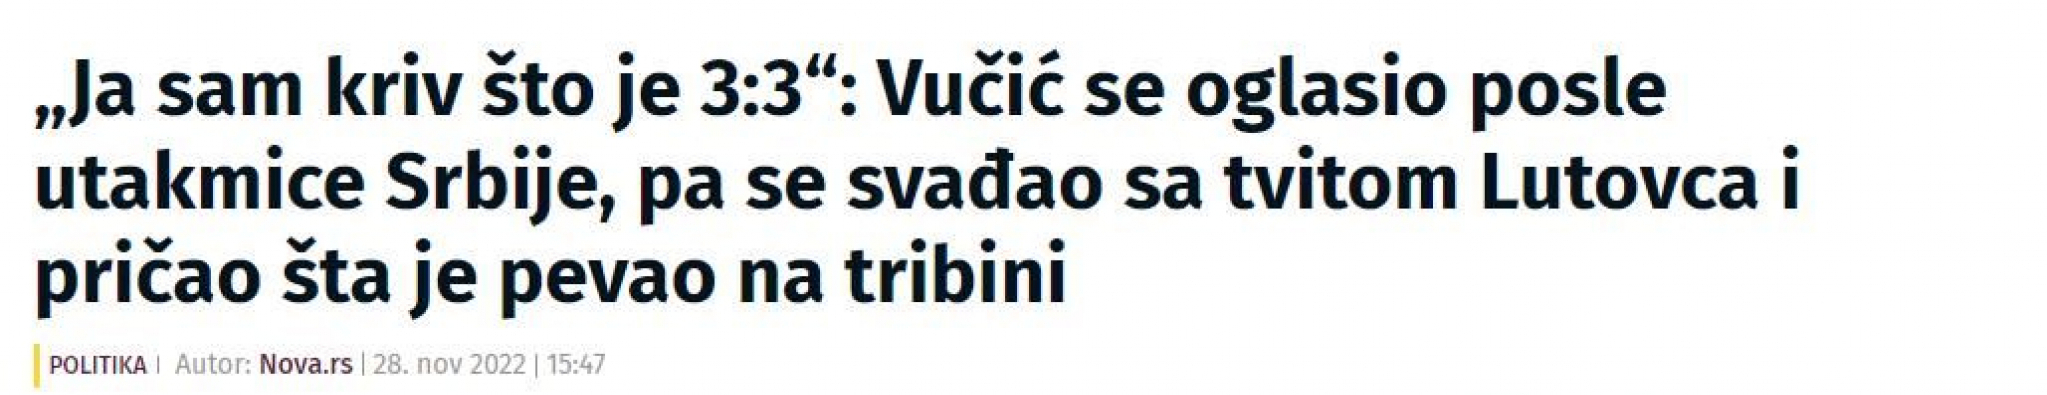 SRAMNO! Tajkunski mediji organizovano napali Vučića jer brani istinu i zdrav razum (FOTO)